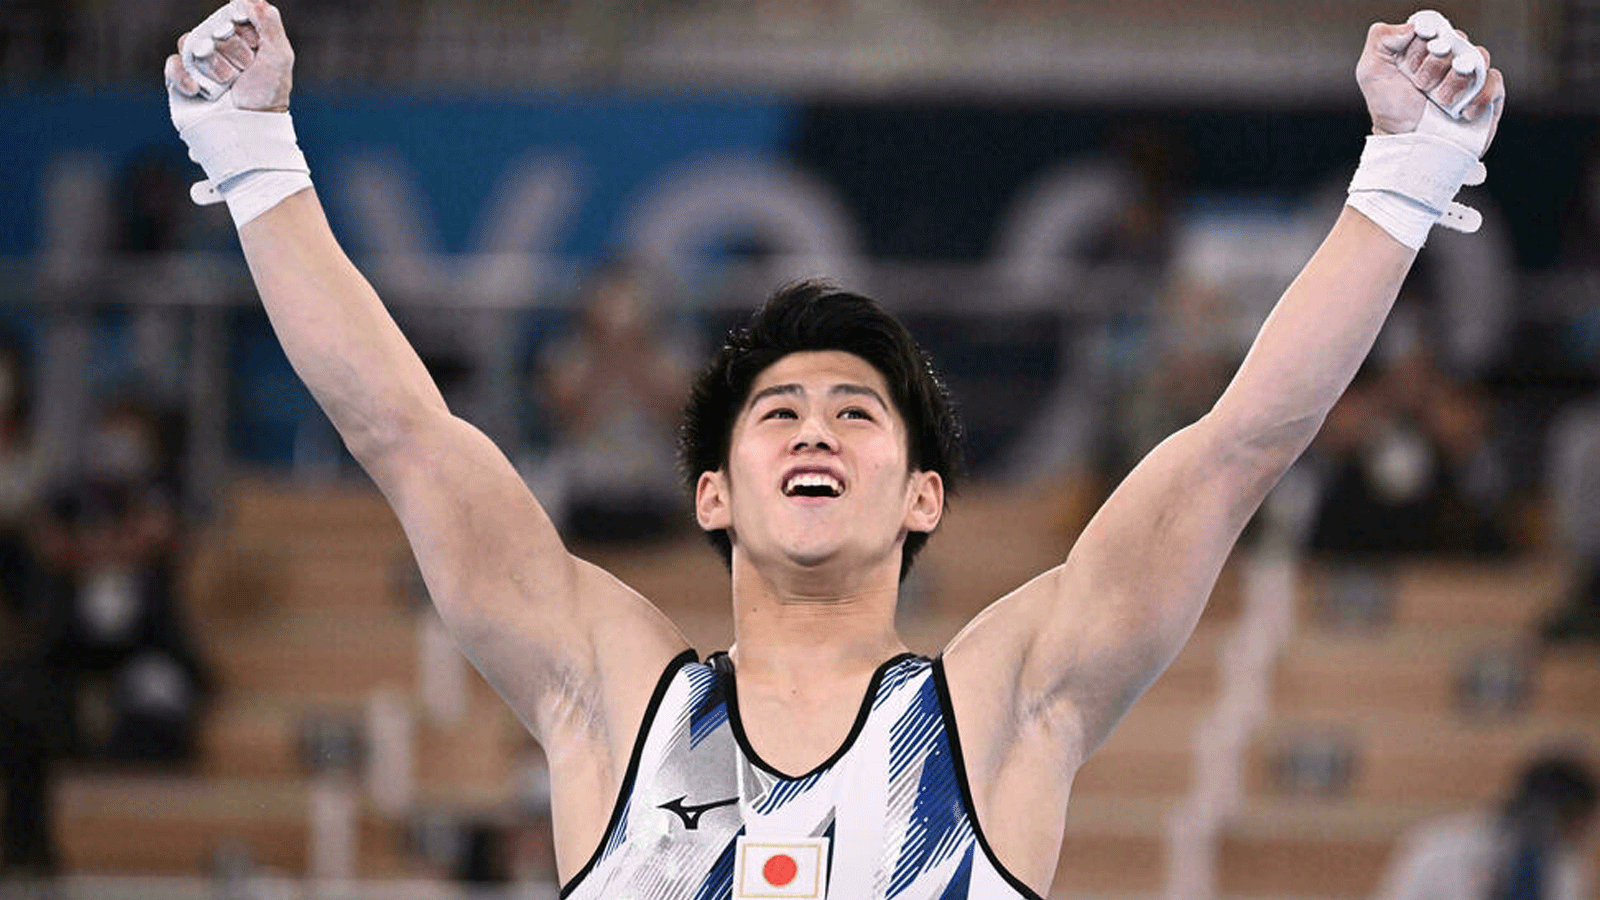 الياباني دايكي هاشيموتو يفوز بنهائي المسابقة الكاملة المرموقة ضمن أولمبياد طوكيو. بتاريخ 28 تموز/ يوليو 2021